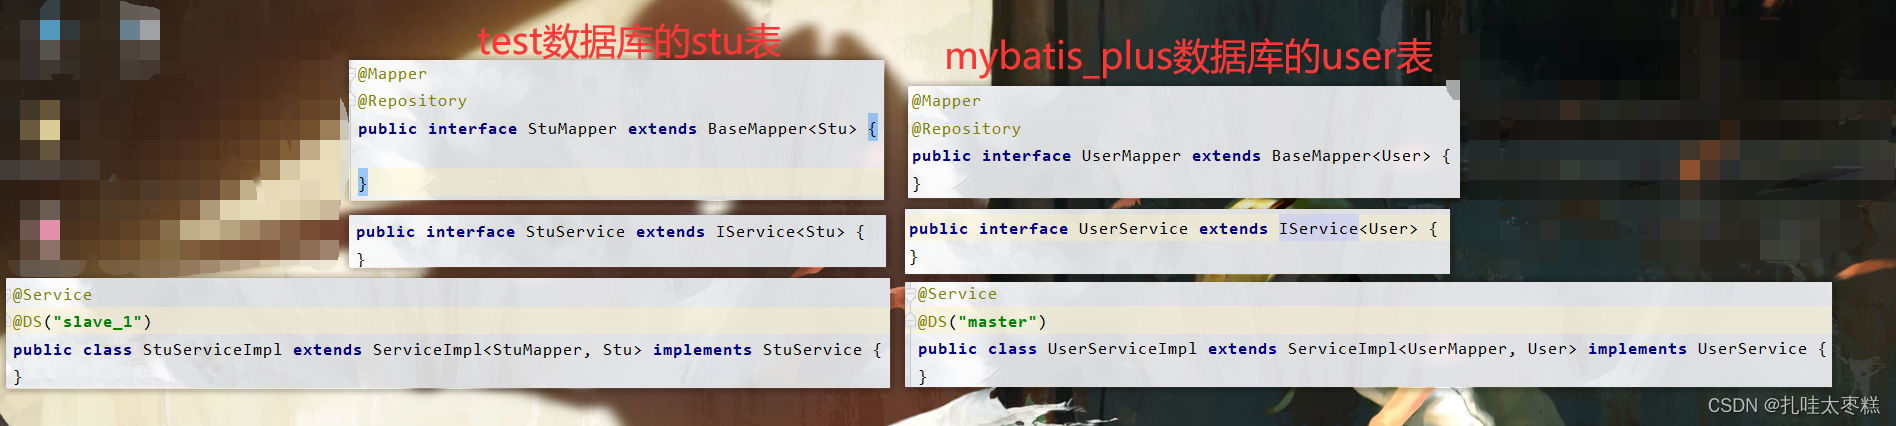 Mybatis-Plus进阶分页与乐观锁插件及通用枚举和多数据源详解